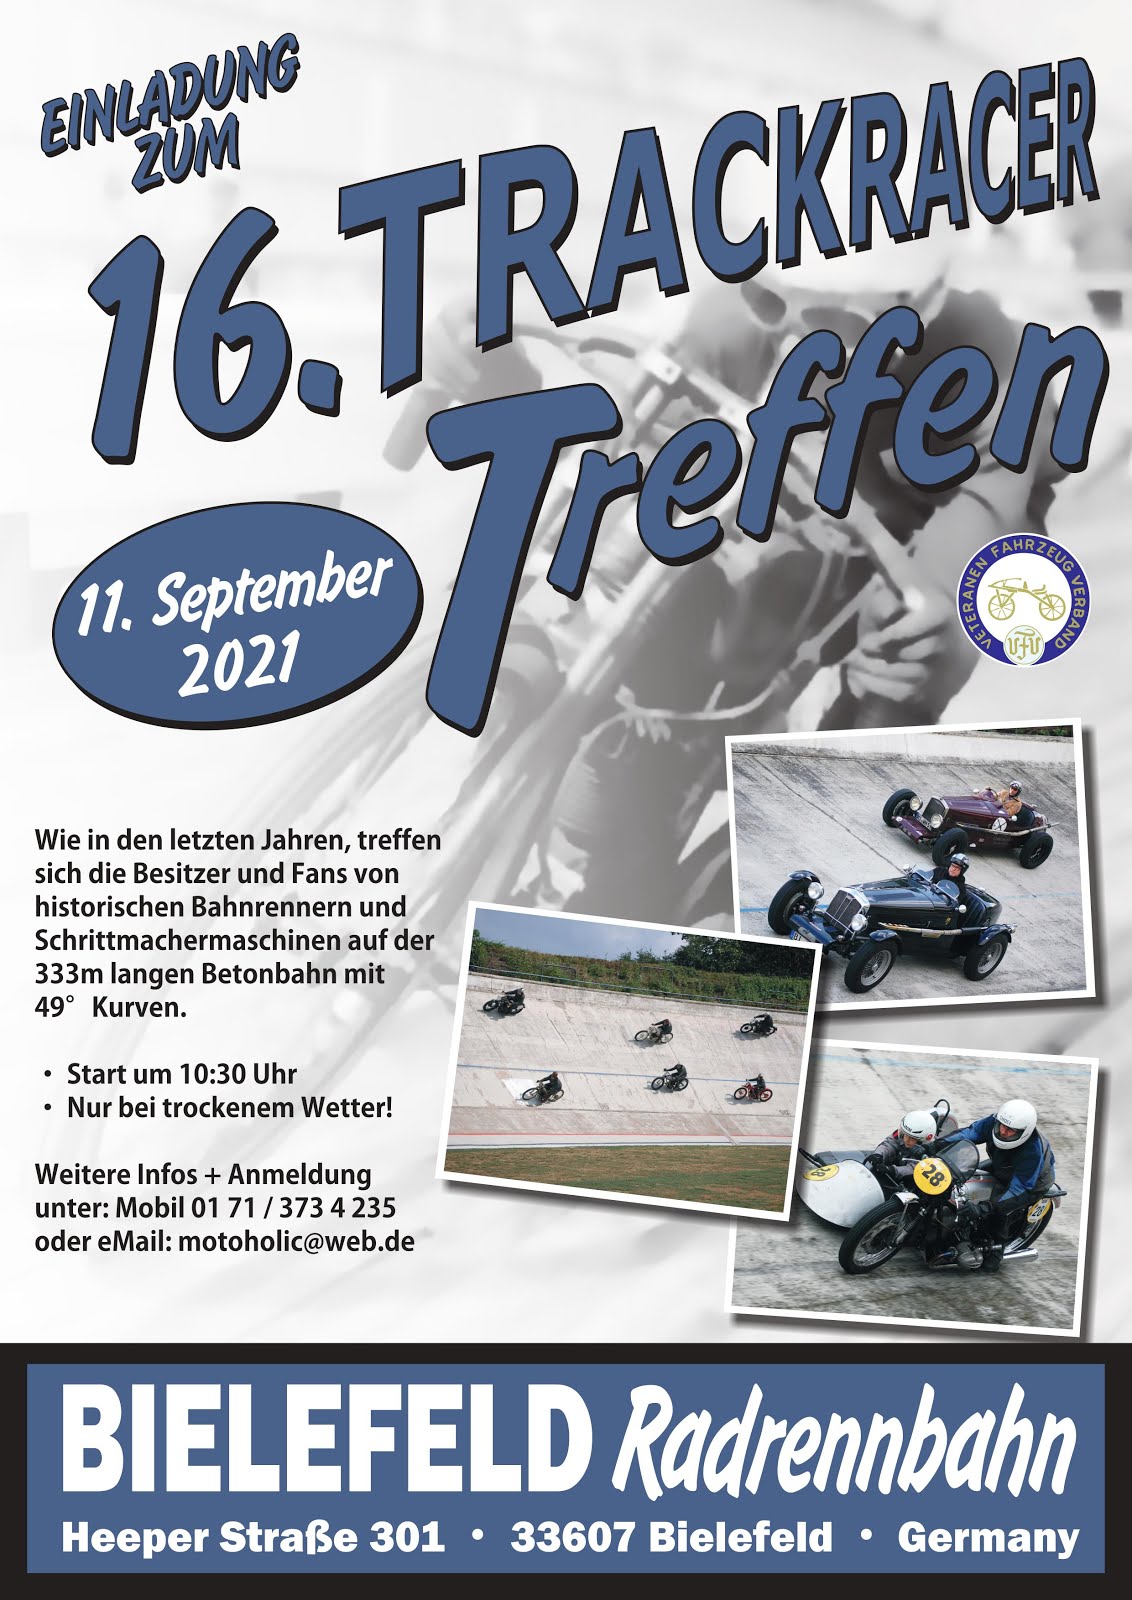 Track Race Bielefeld 2021